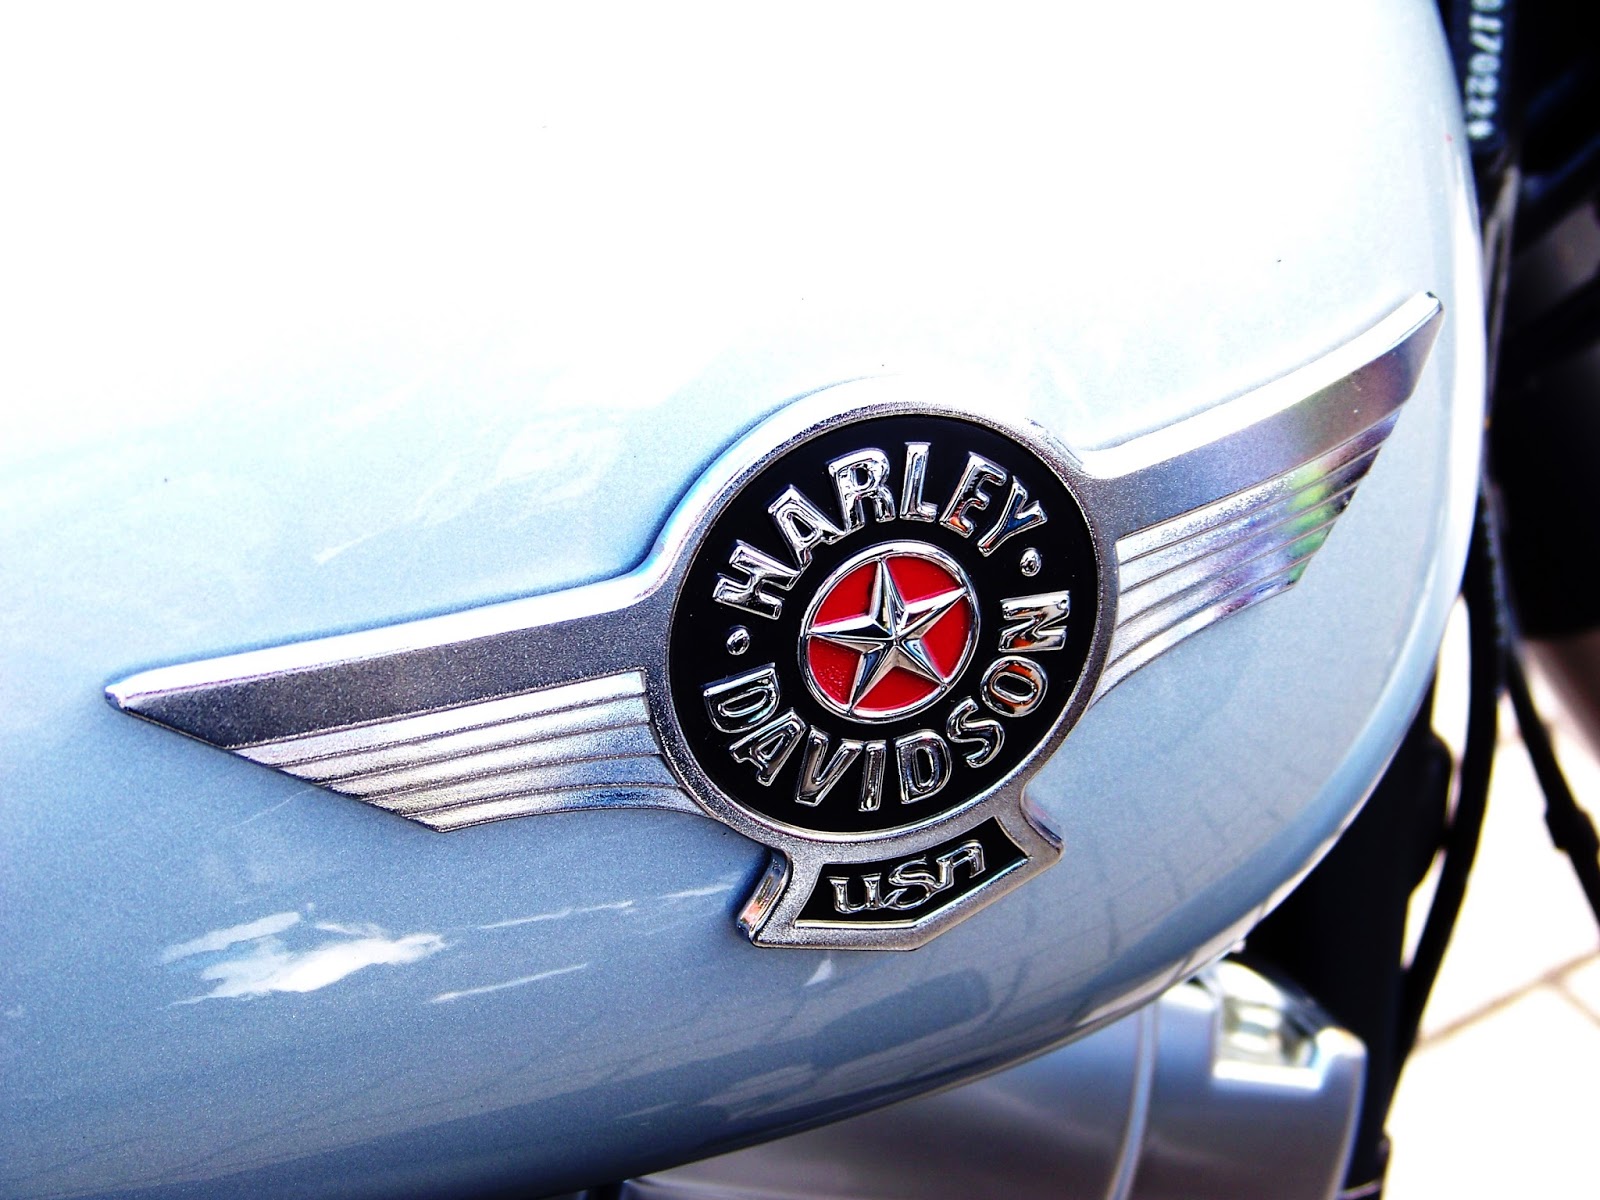  Harley  Davidson  tank logo s  Motorcycle Design